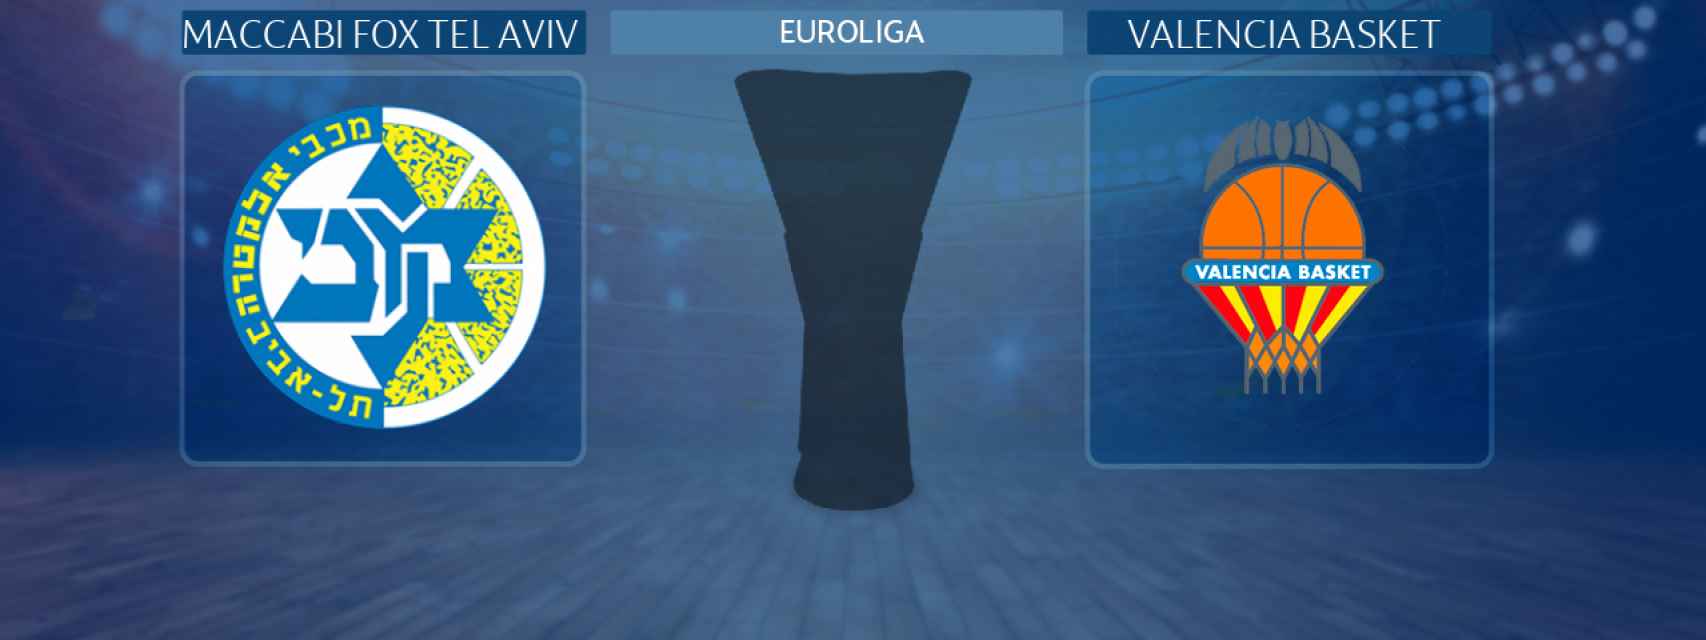 Maccabi Fox Tel Aviv - Valencia Basket, partido de la Euroliga